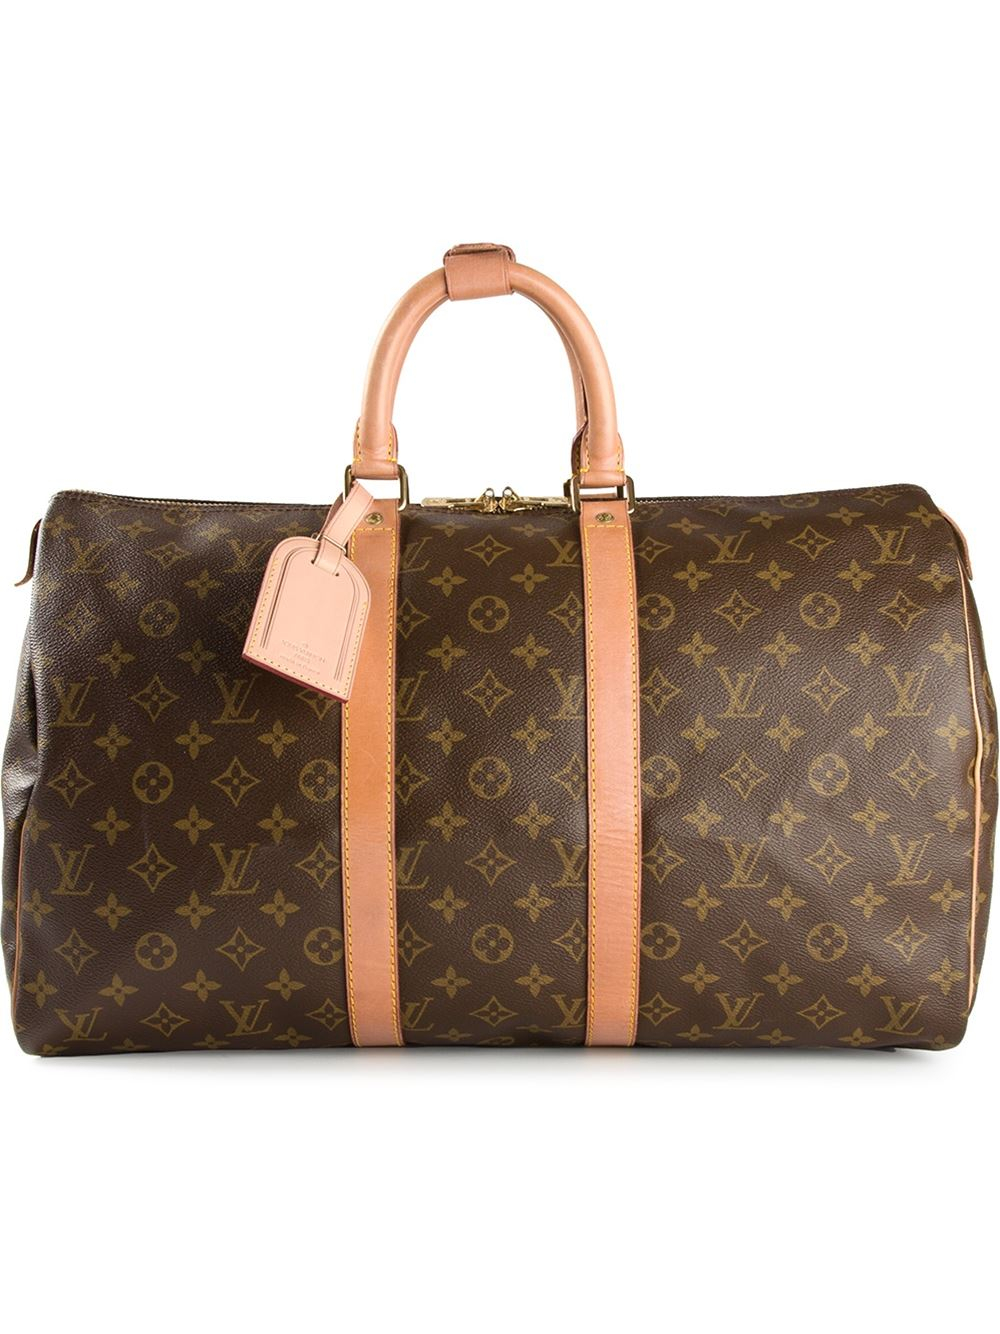 Michael Kors Handbags & Purses - Macy's | Handbags michael kors, Leopard  print handbags, Bags